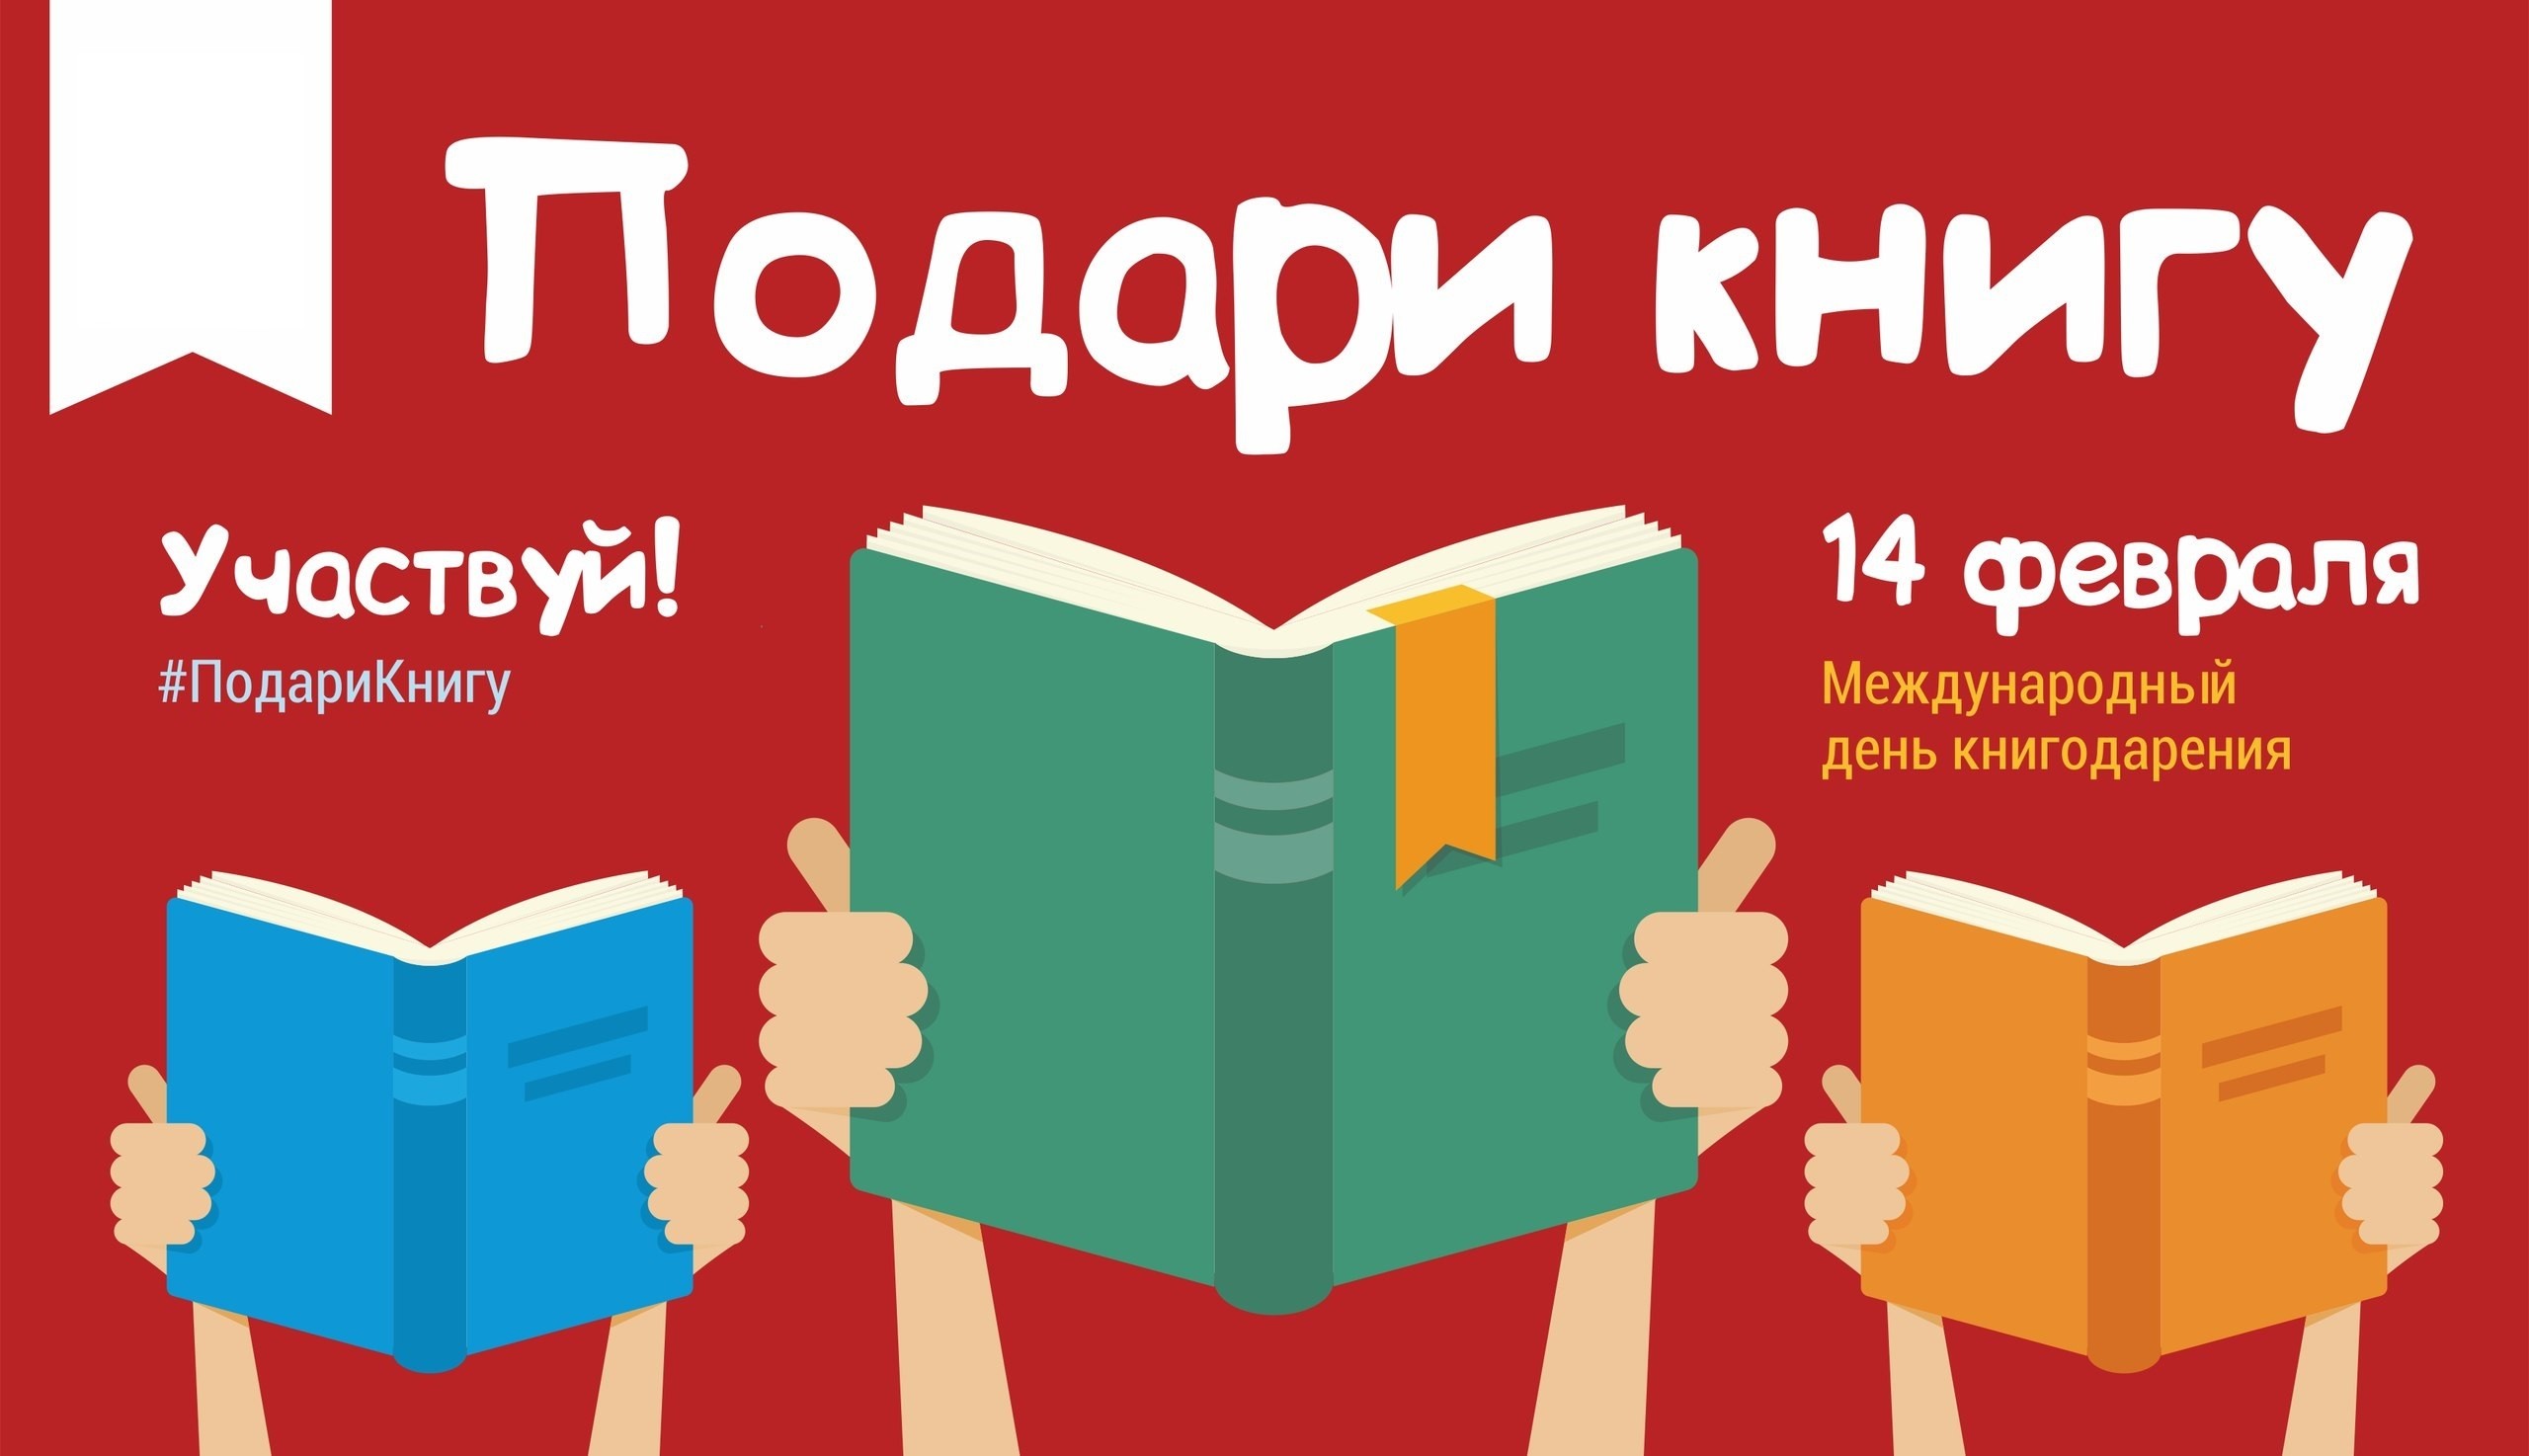 В рамках мероприятий, приуроченных к Международному дню книгодарения, Центр книги и чтения областной научной библиотеки проведет несколько встреч просветительской акции «Подари книгу» с участием известных людей Новосибирска